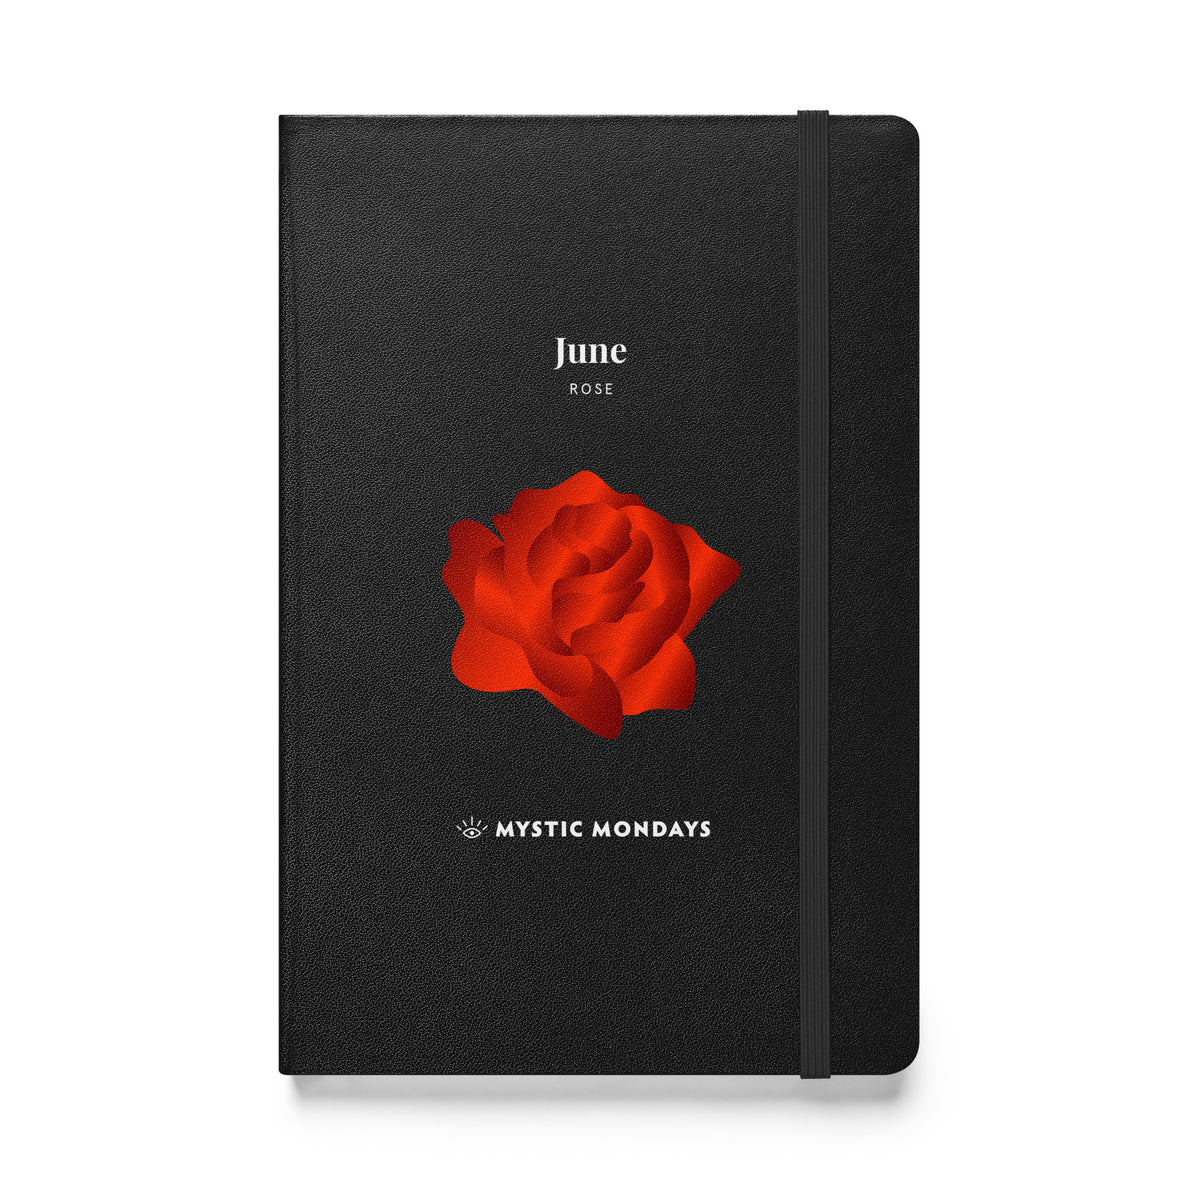 Rose Hardcover Journal